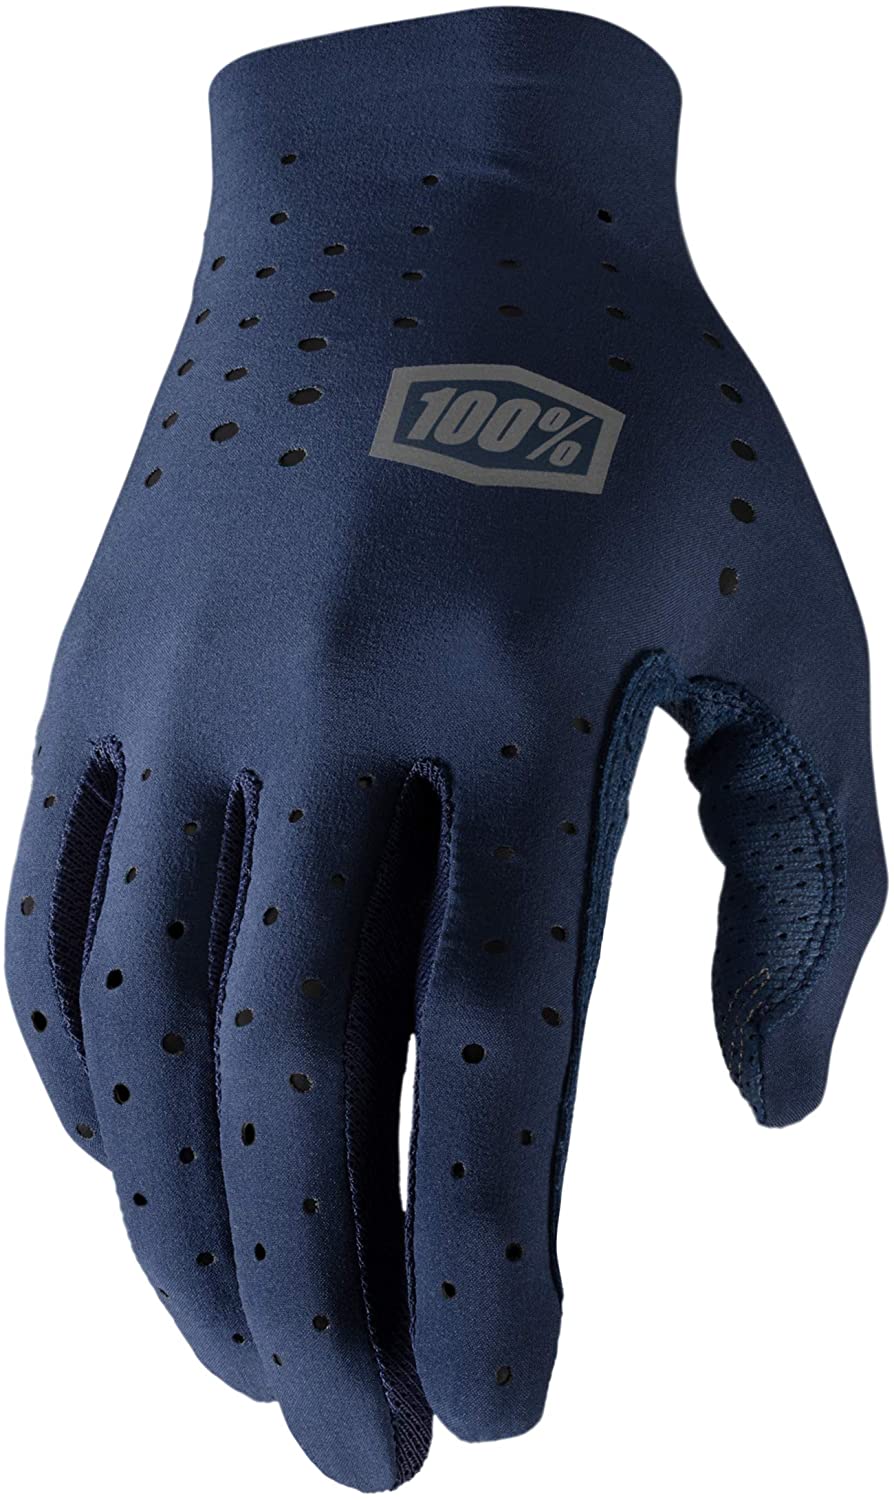 Dámské rukavice 100% Sling Navy 2022 S